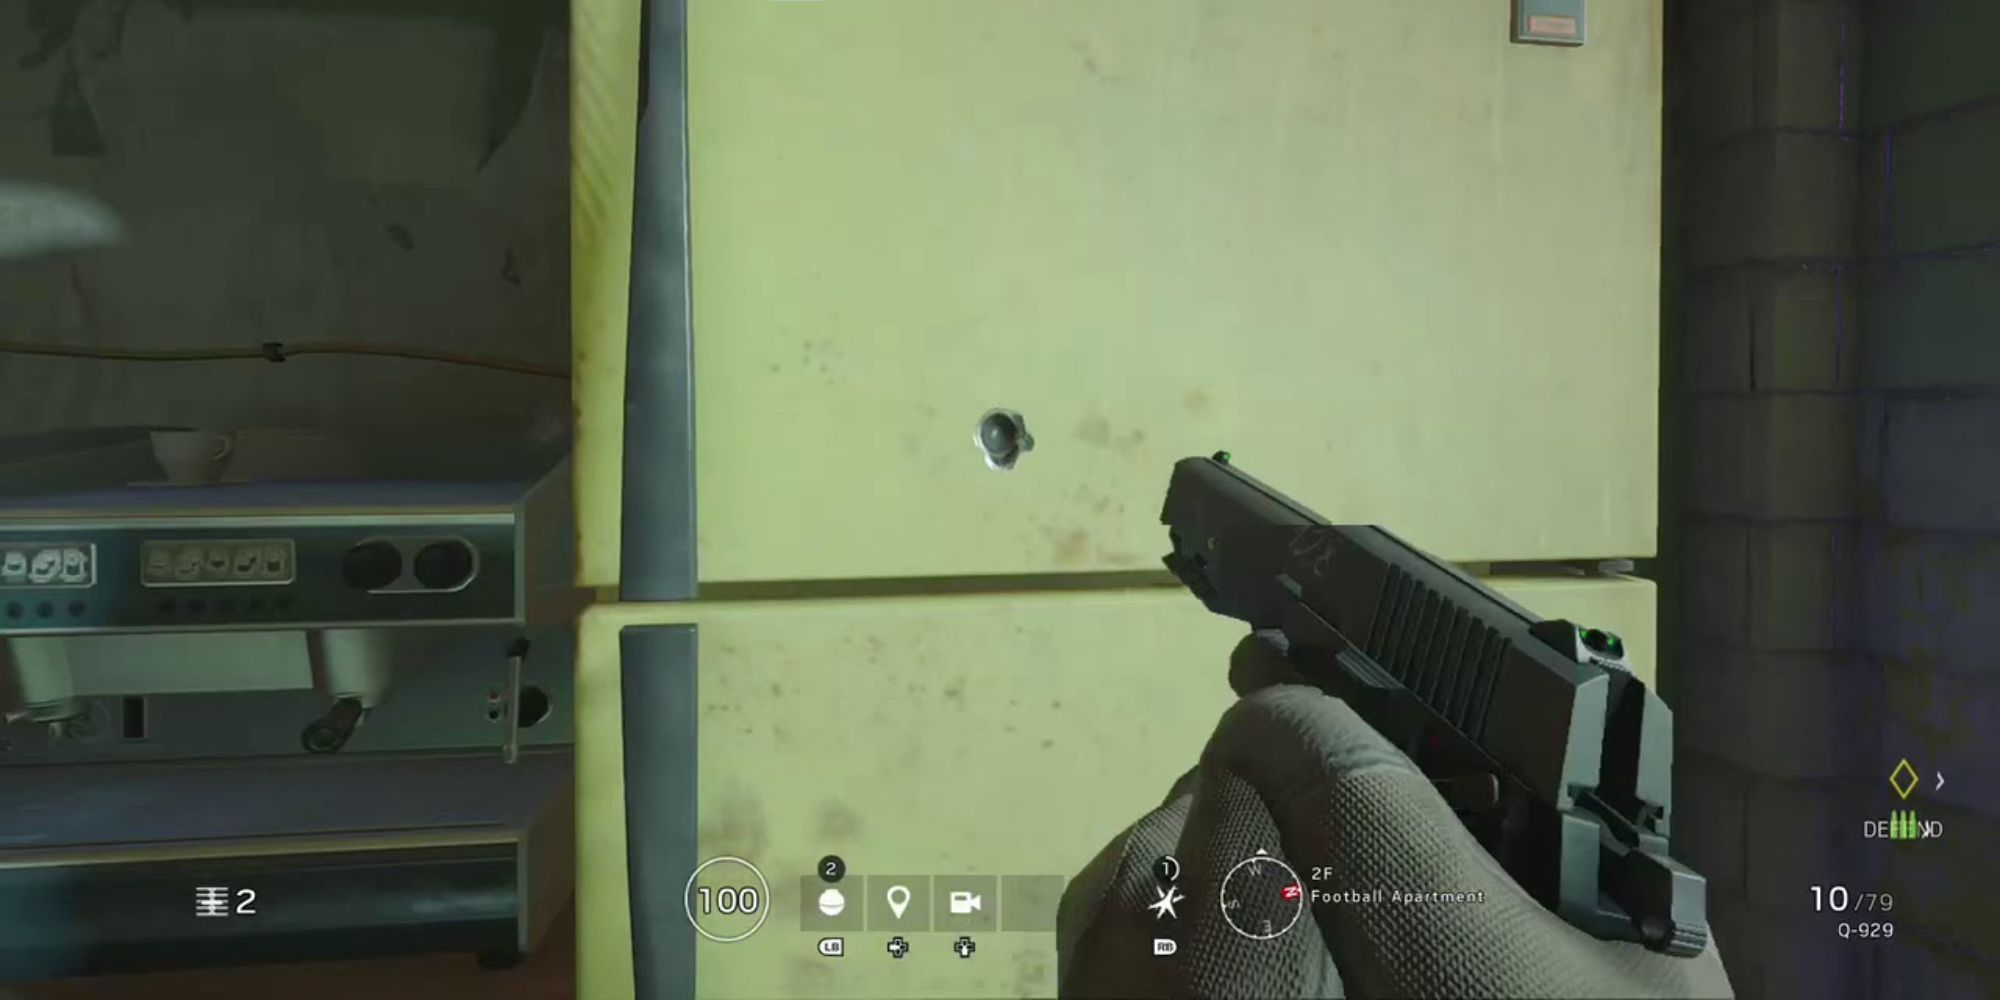 siege_q929 pistol in gameplay